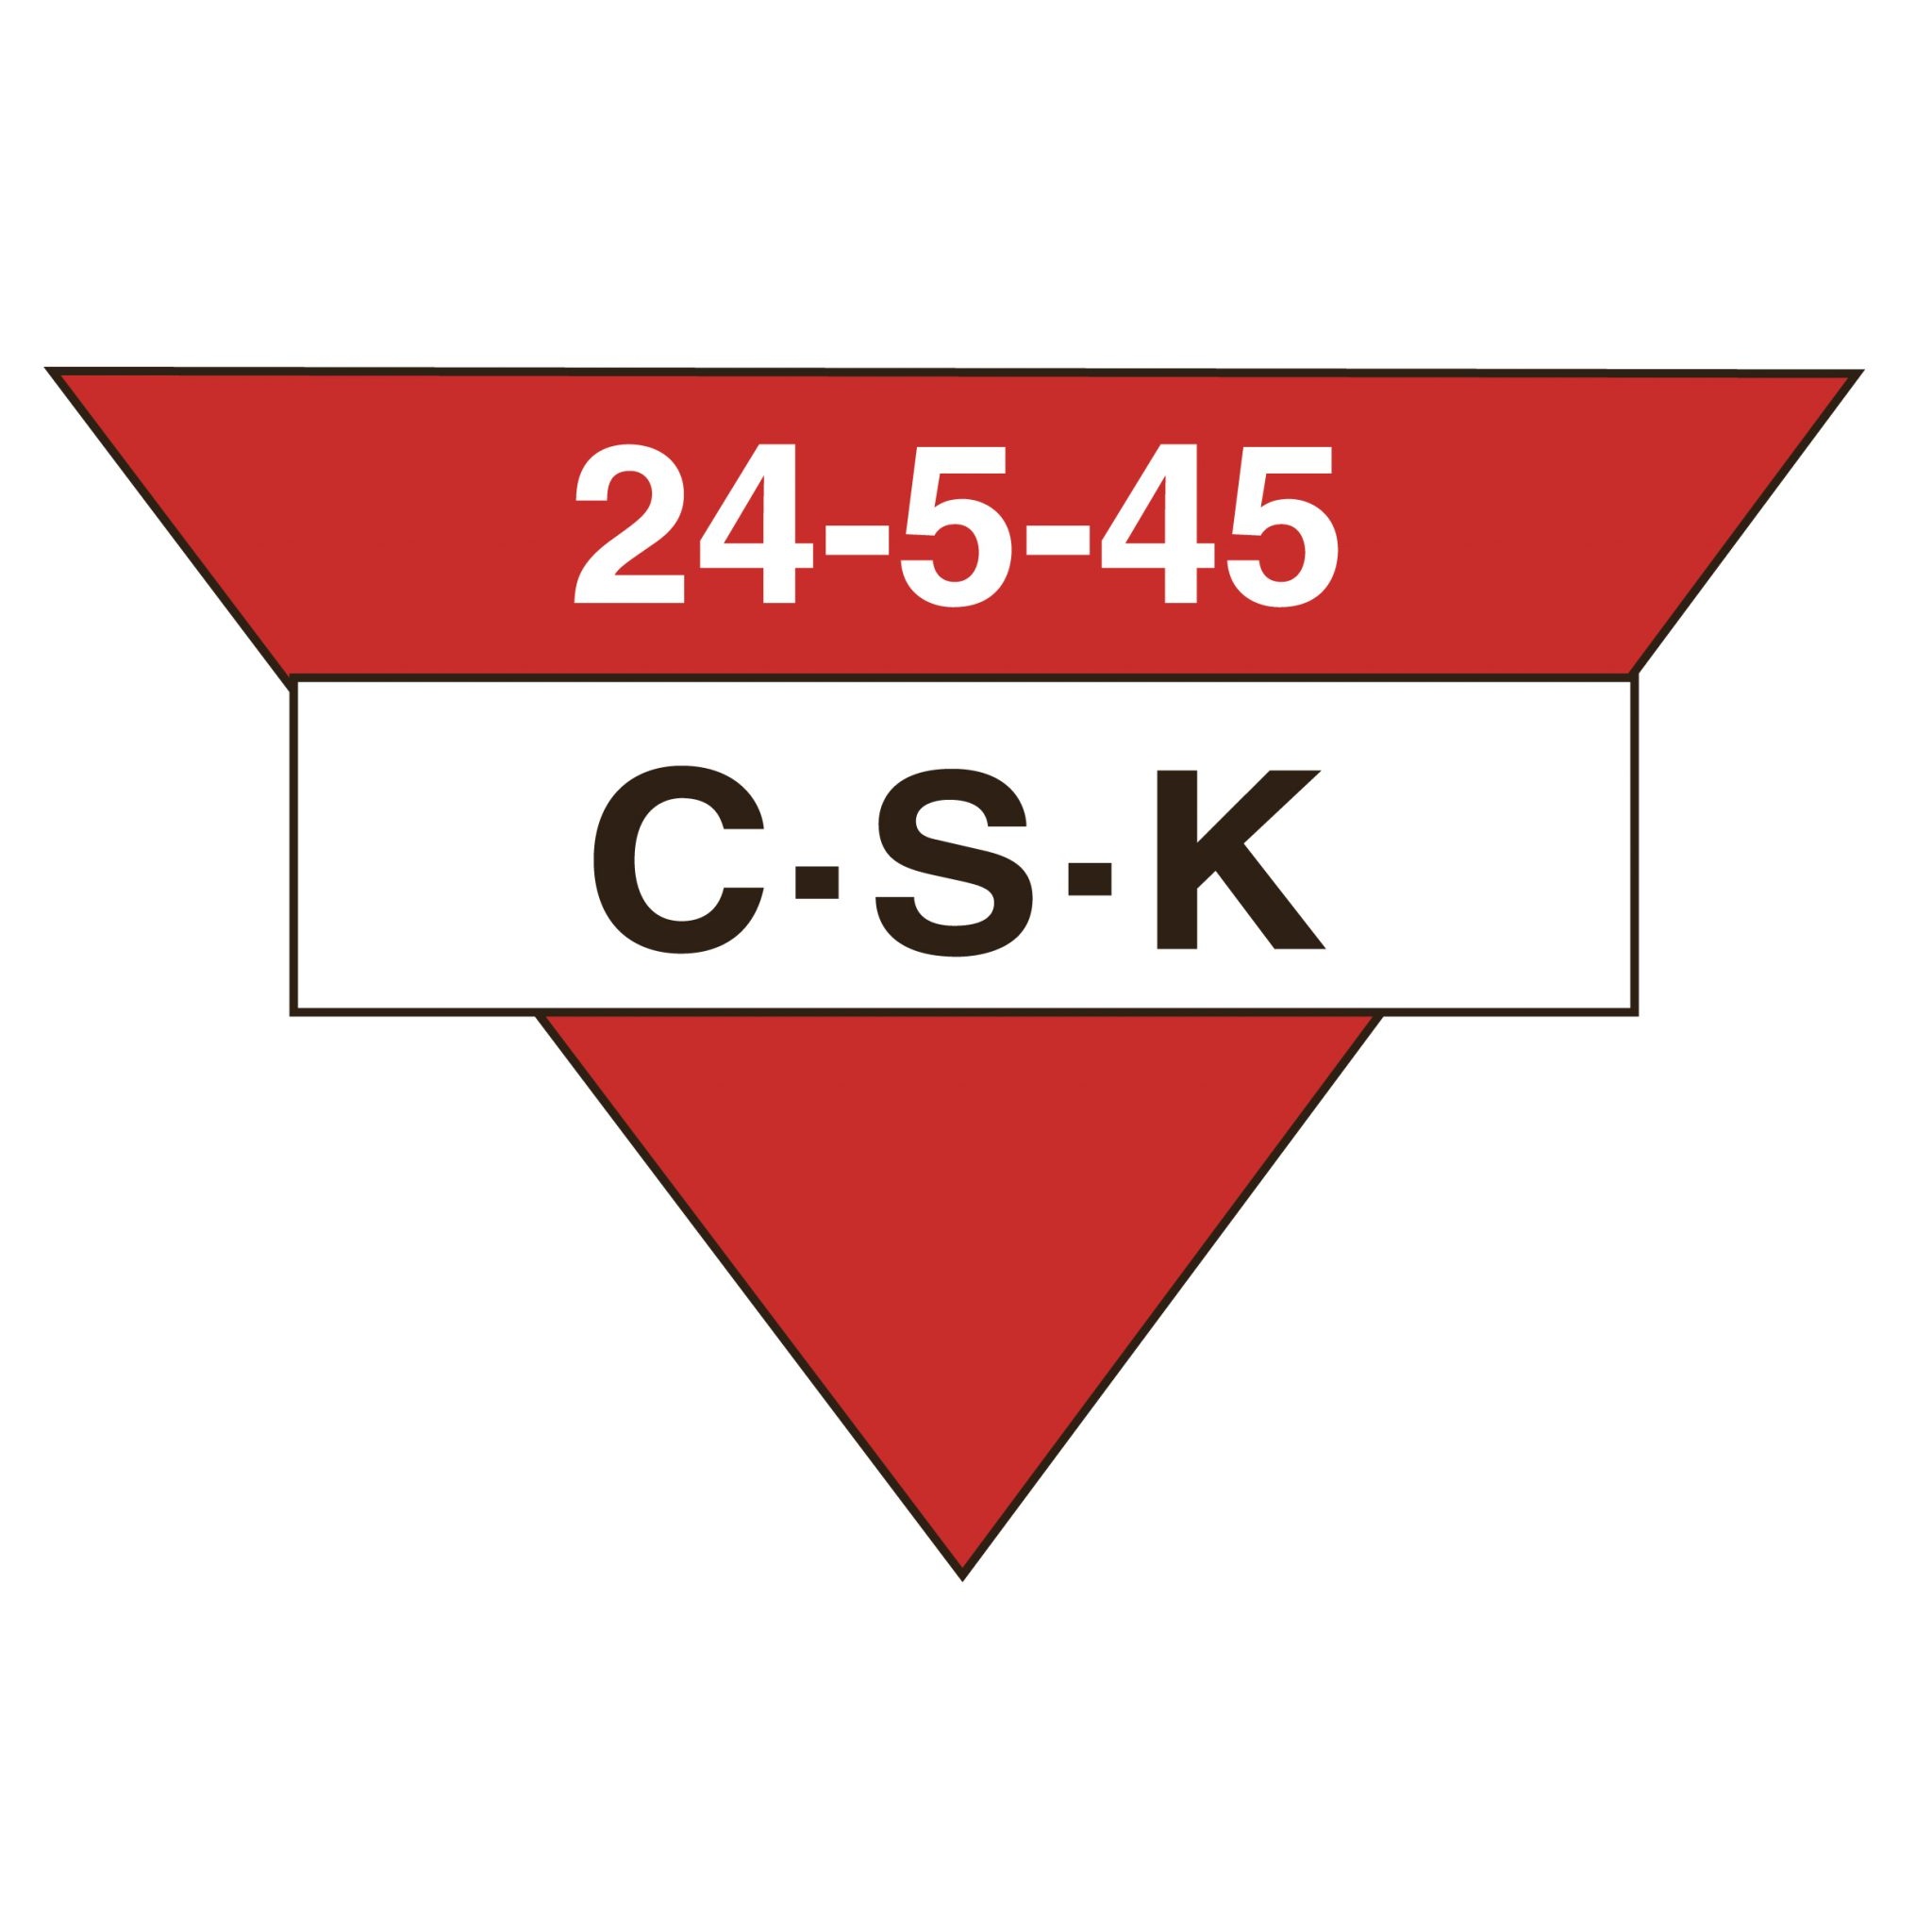 Escudo del Charlottenlund Sub 19